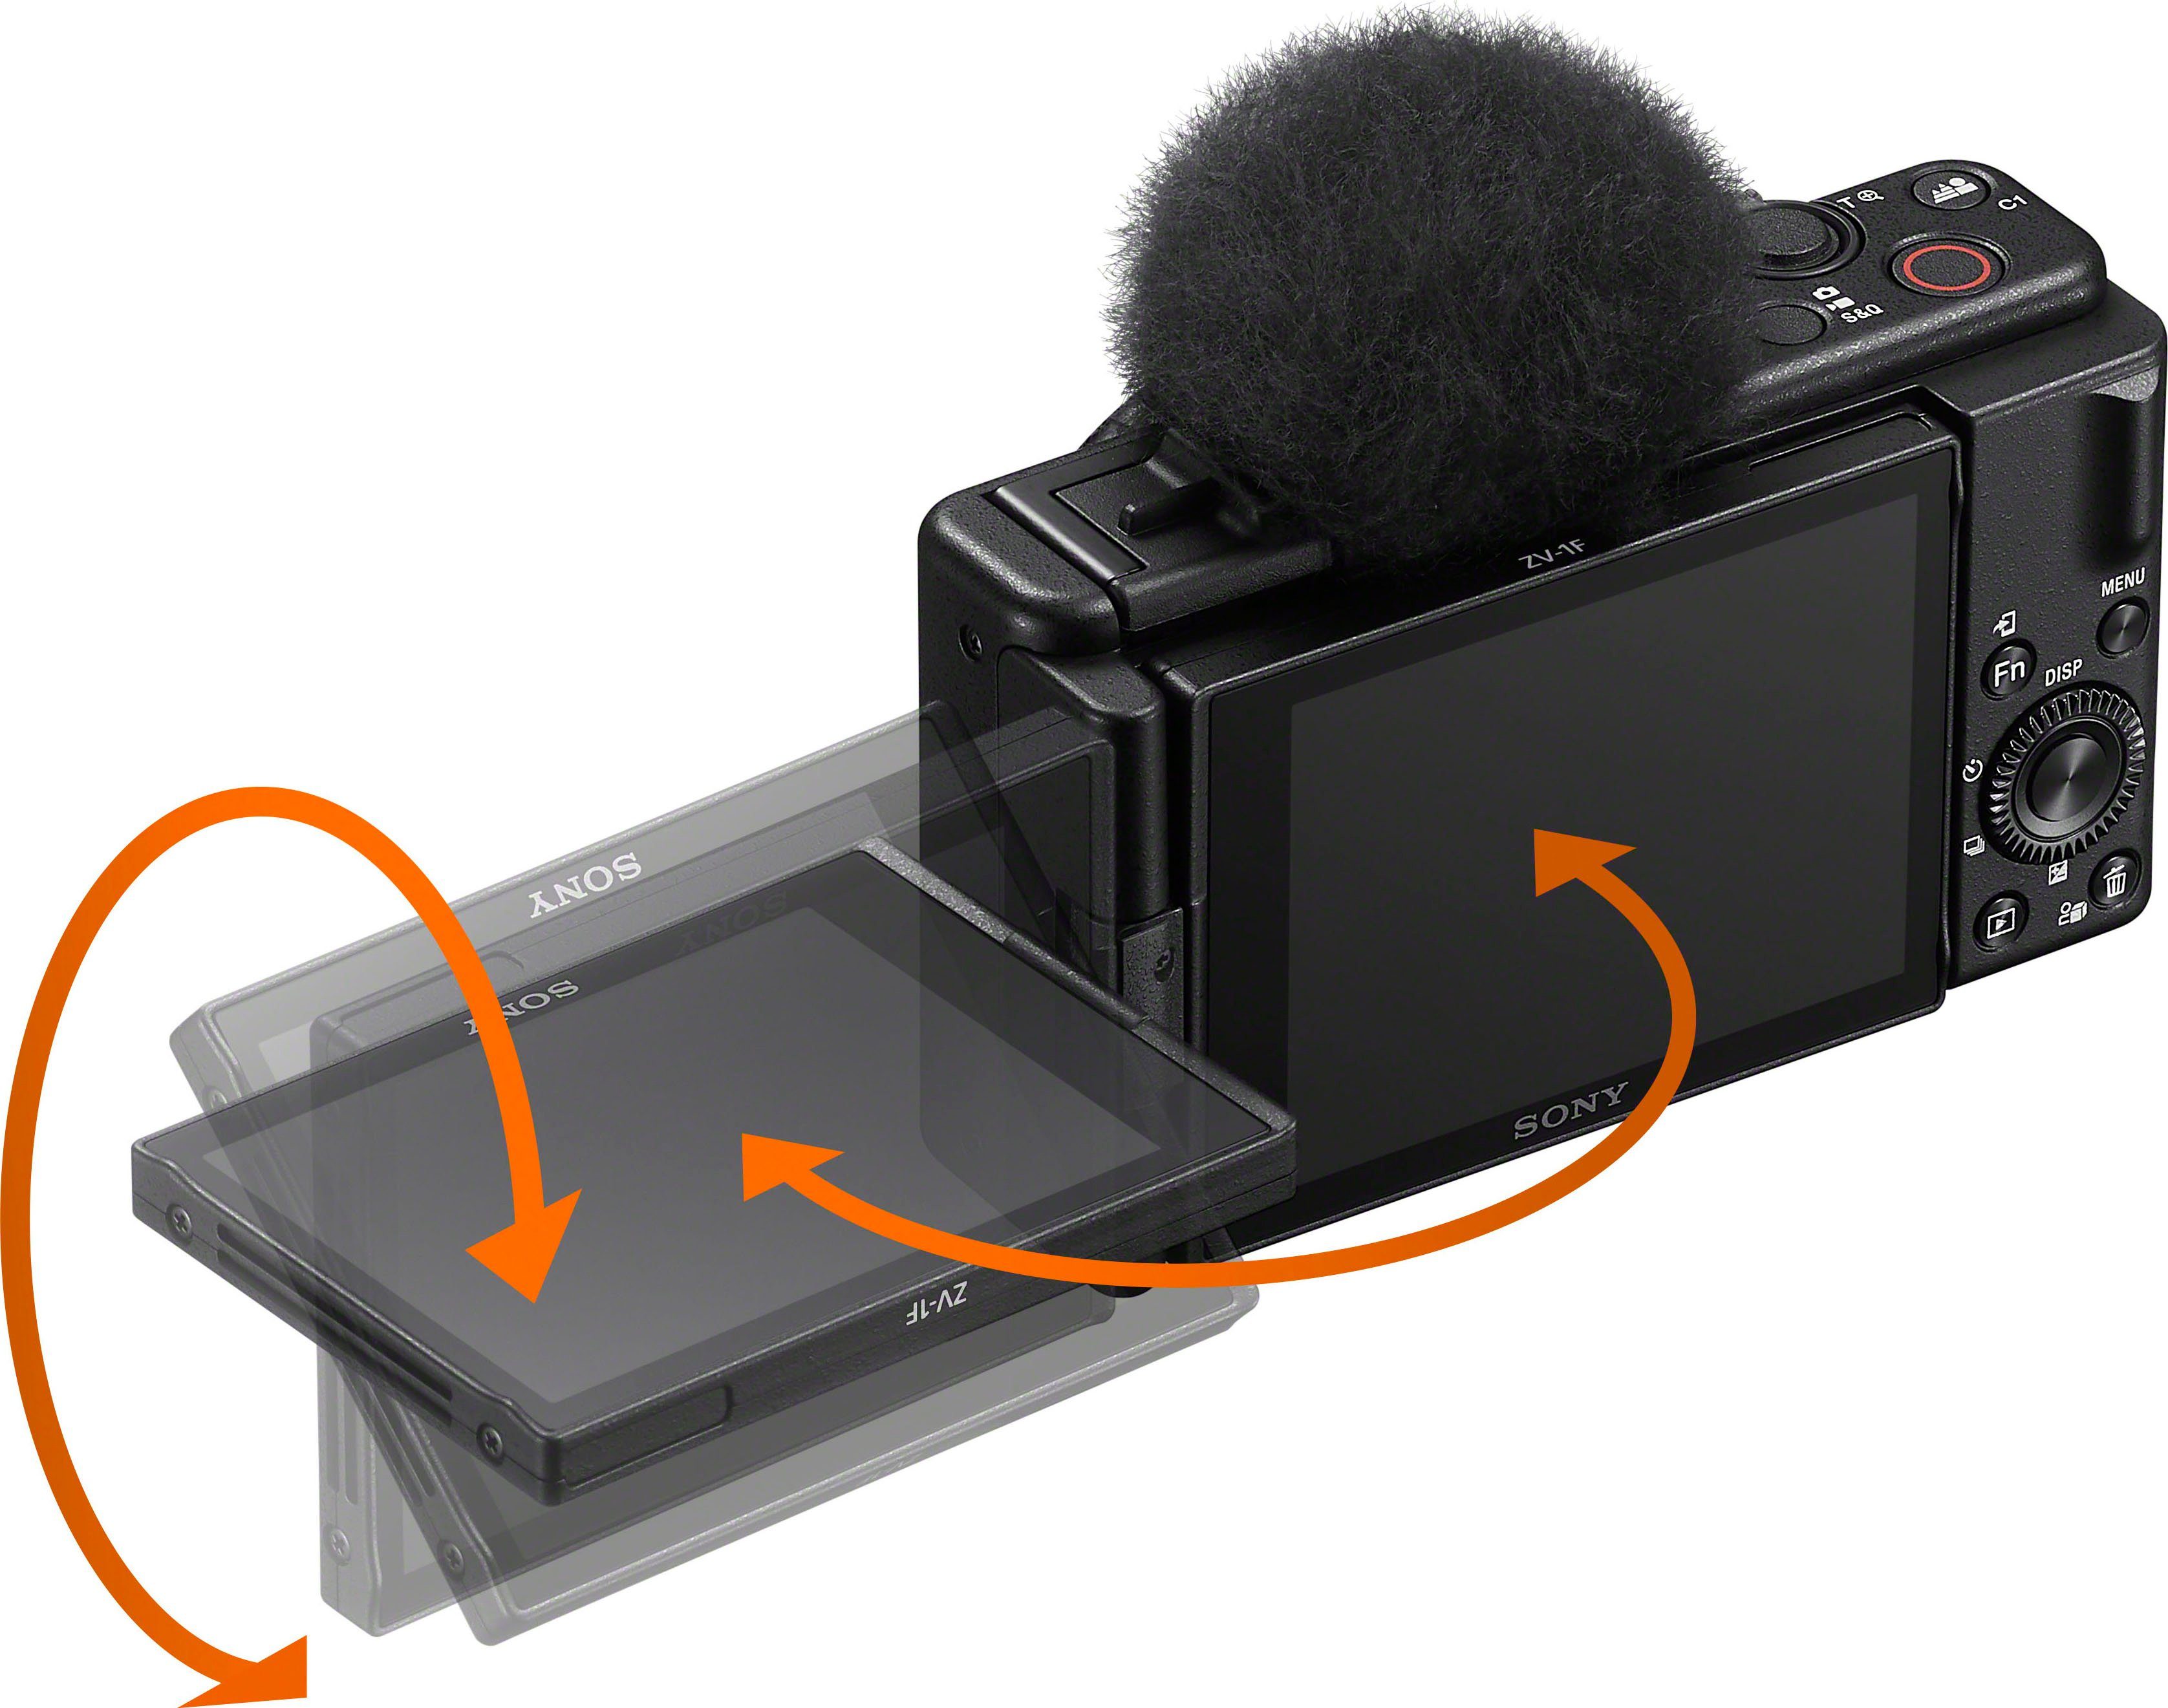 Sony ZV-1F T* MP, WLAN) 6 (ZEISS Bluetooth, 6 20,1 Tessar Objektiv, in Elemente Gruppen, Kompaktkamera